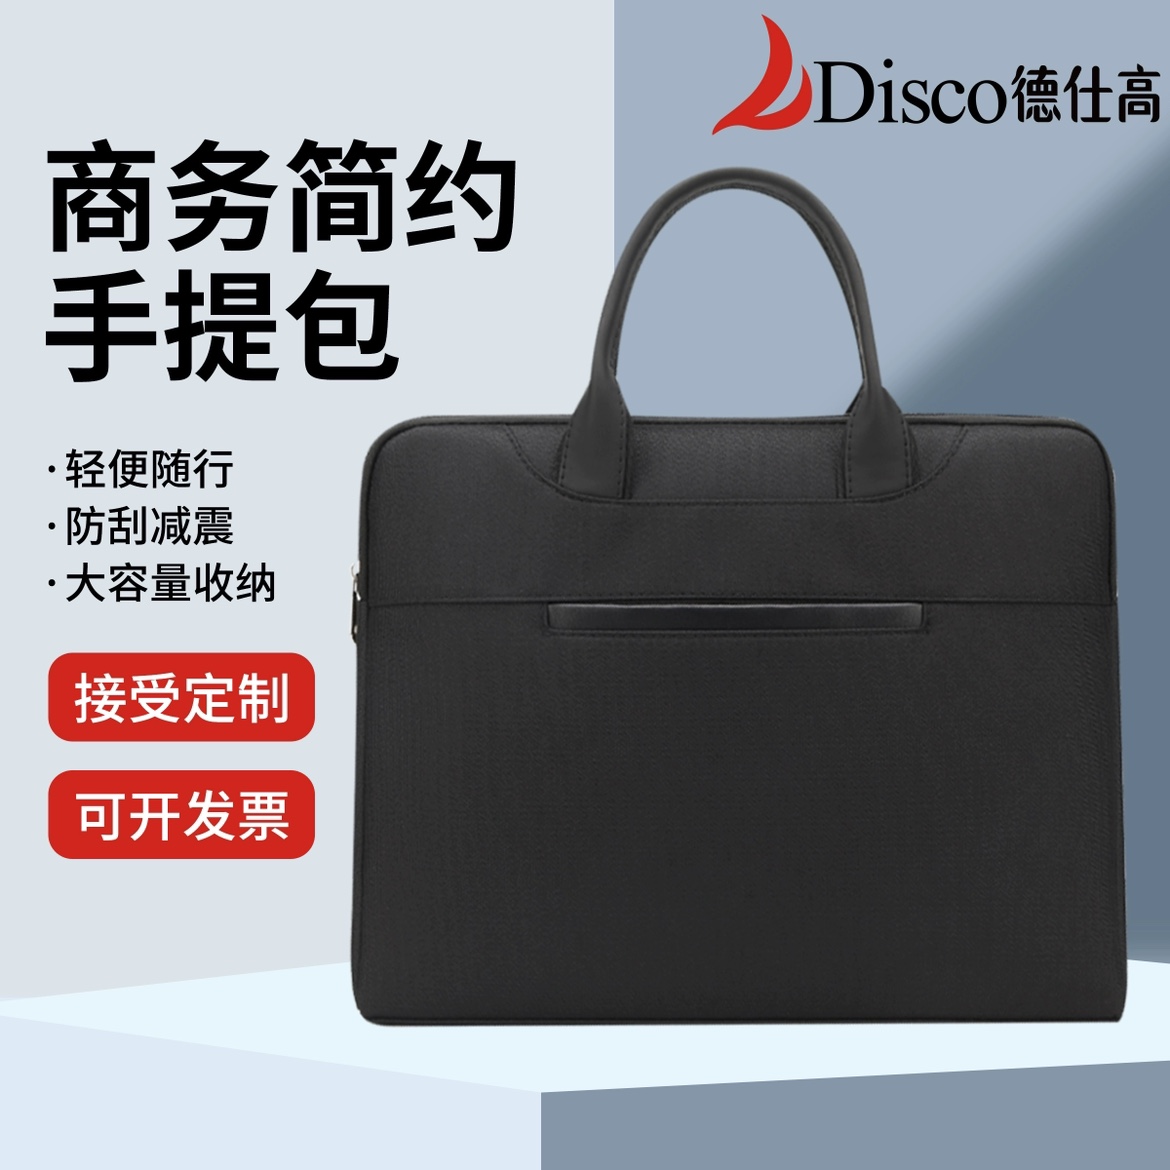 德仕高D-5203商务手提包会议包资料袋公文包手提电脑包可定制印刷-封面